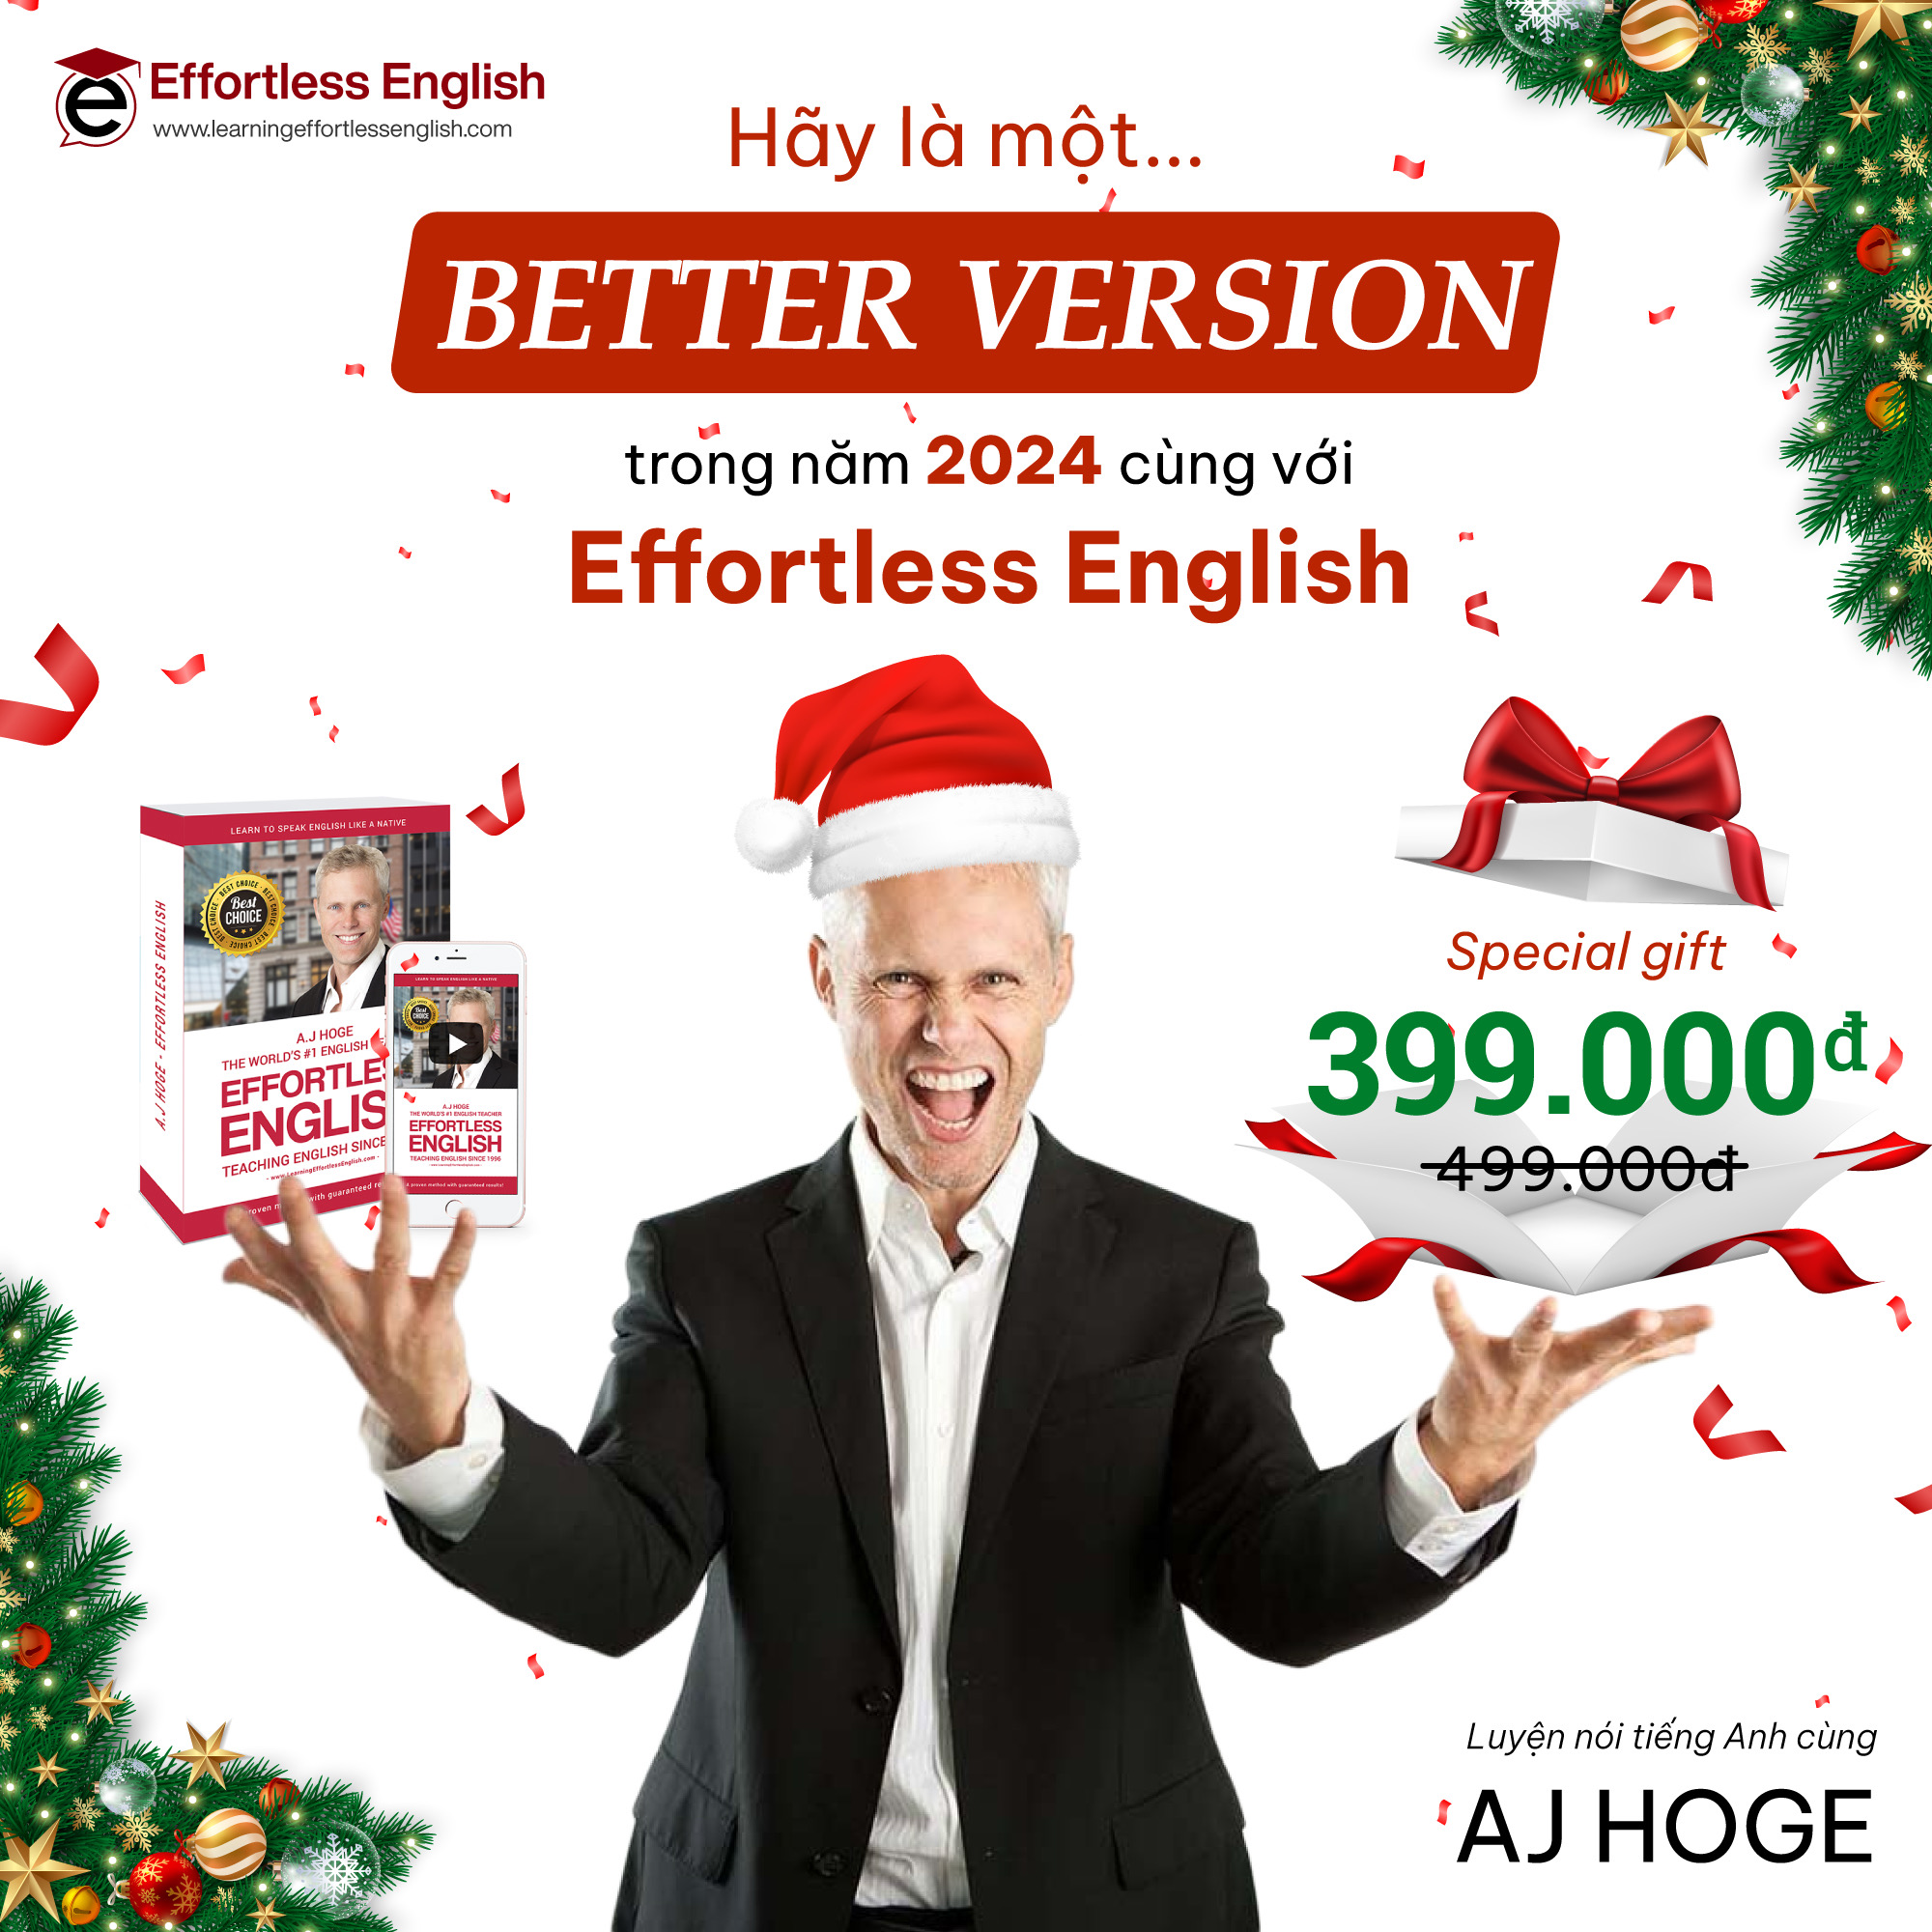 Hãy là một “Better Version” trong năm 2024 cùng với Effortless English!